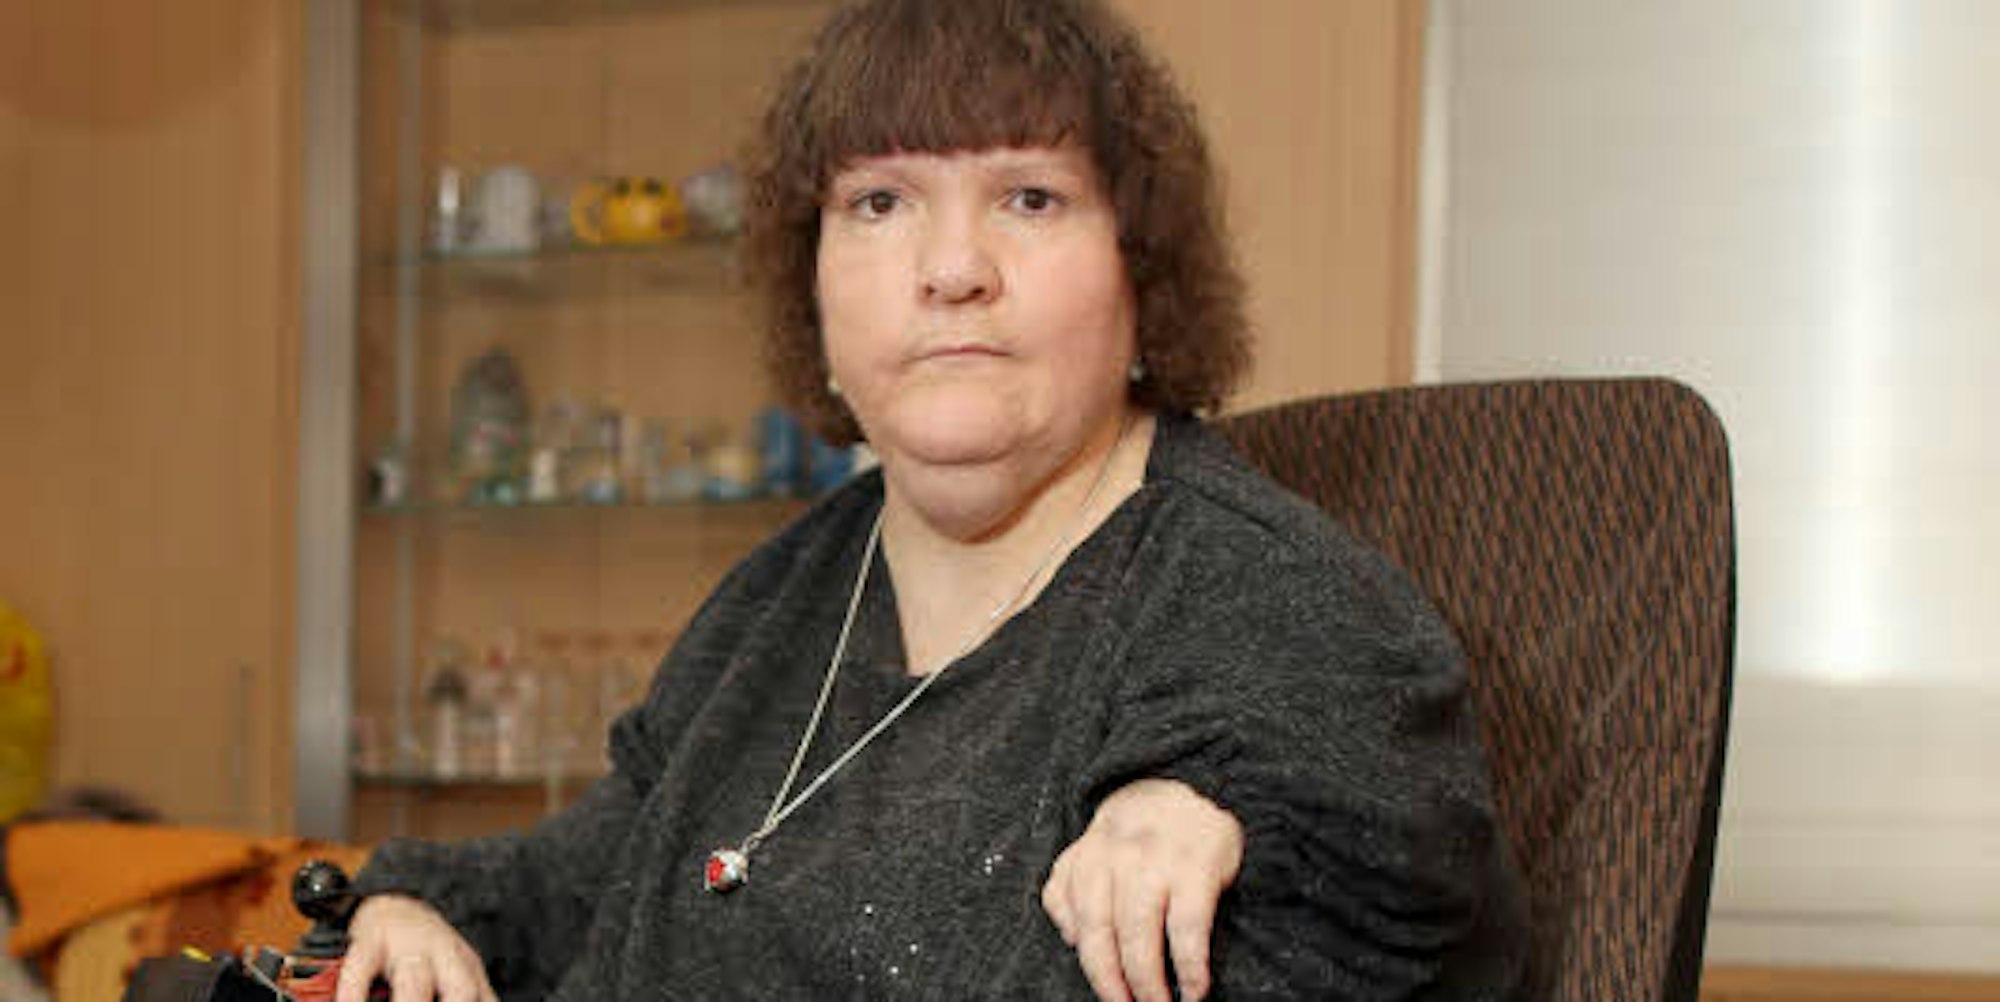 Sie ist eines der jüngsten Contergan-Opfer: Als Brigitte Rohr im Juli 1962 auf die Welt kam, war das Mittel seit ein paar Monaten offiziell vom Markt genommen. Im Alter von 18 Jahren bekam sie ihren ersten Rollstuhl.